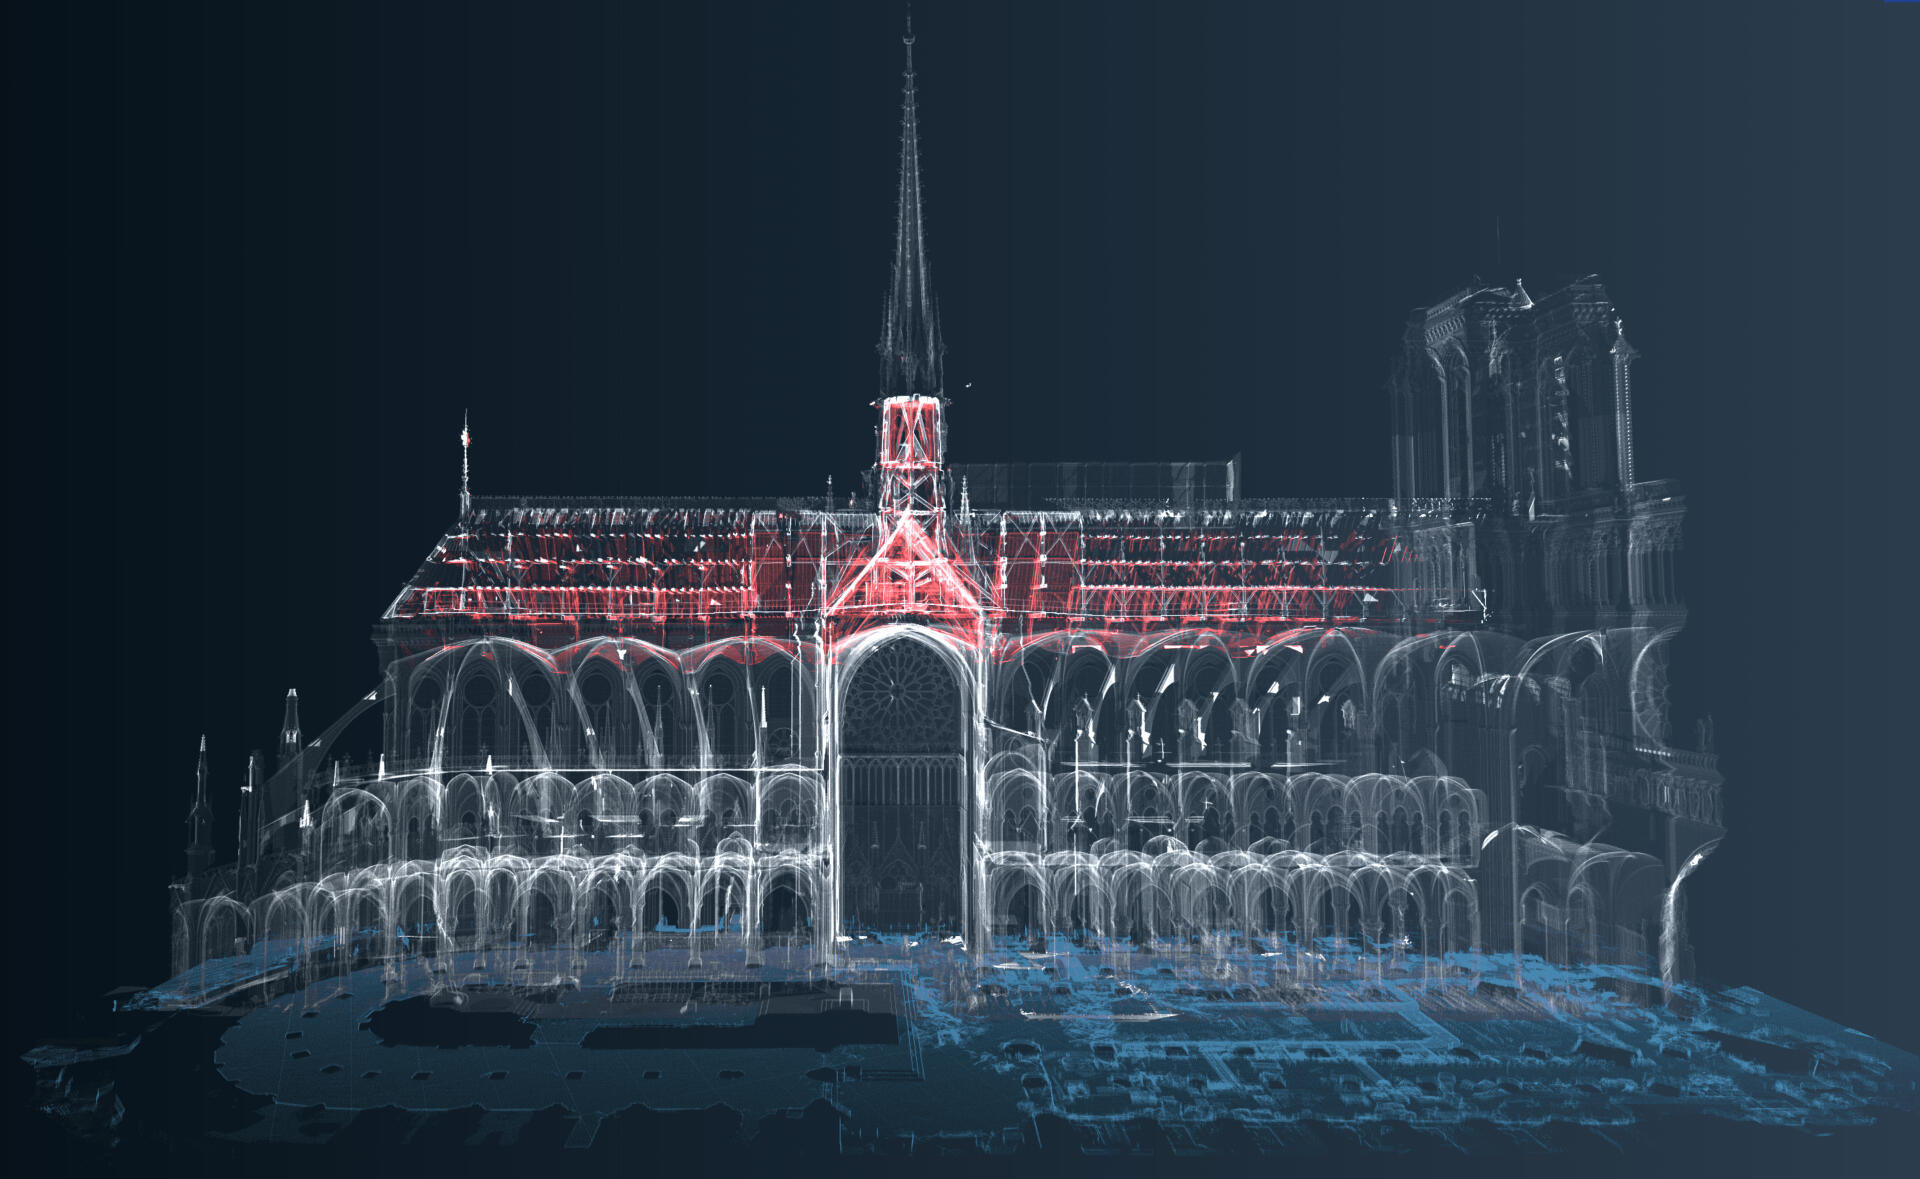 Nuage de points 3D, de la coupe longitudinale sur la partie sud de la cathédrale Notre-Dame de Paris. En rouge, relevé effectué par Andrew Tallon quelques années avant l’incendie de 2019.